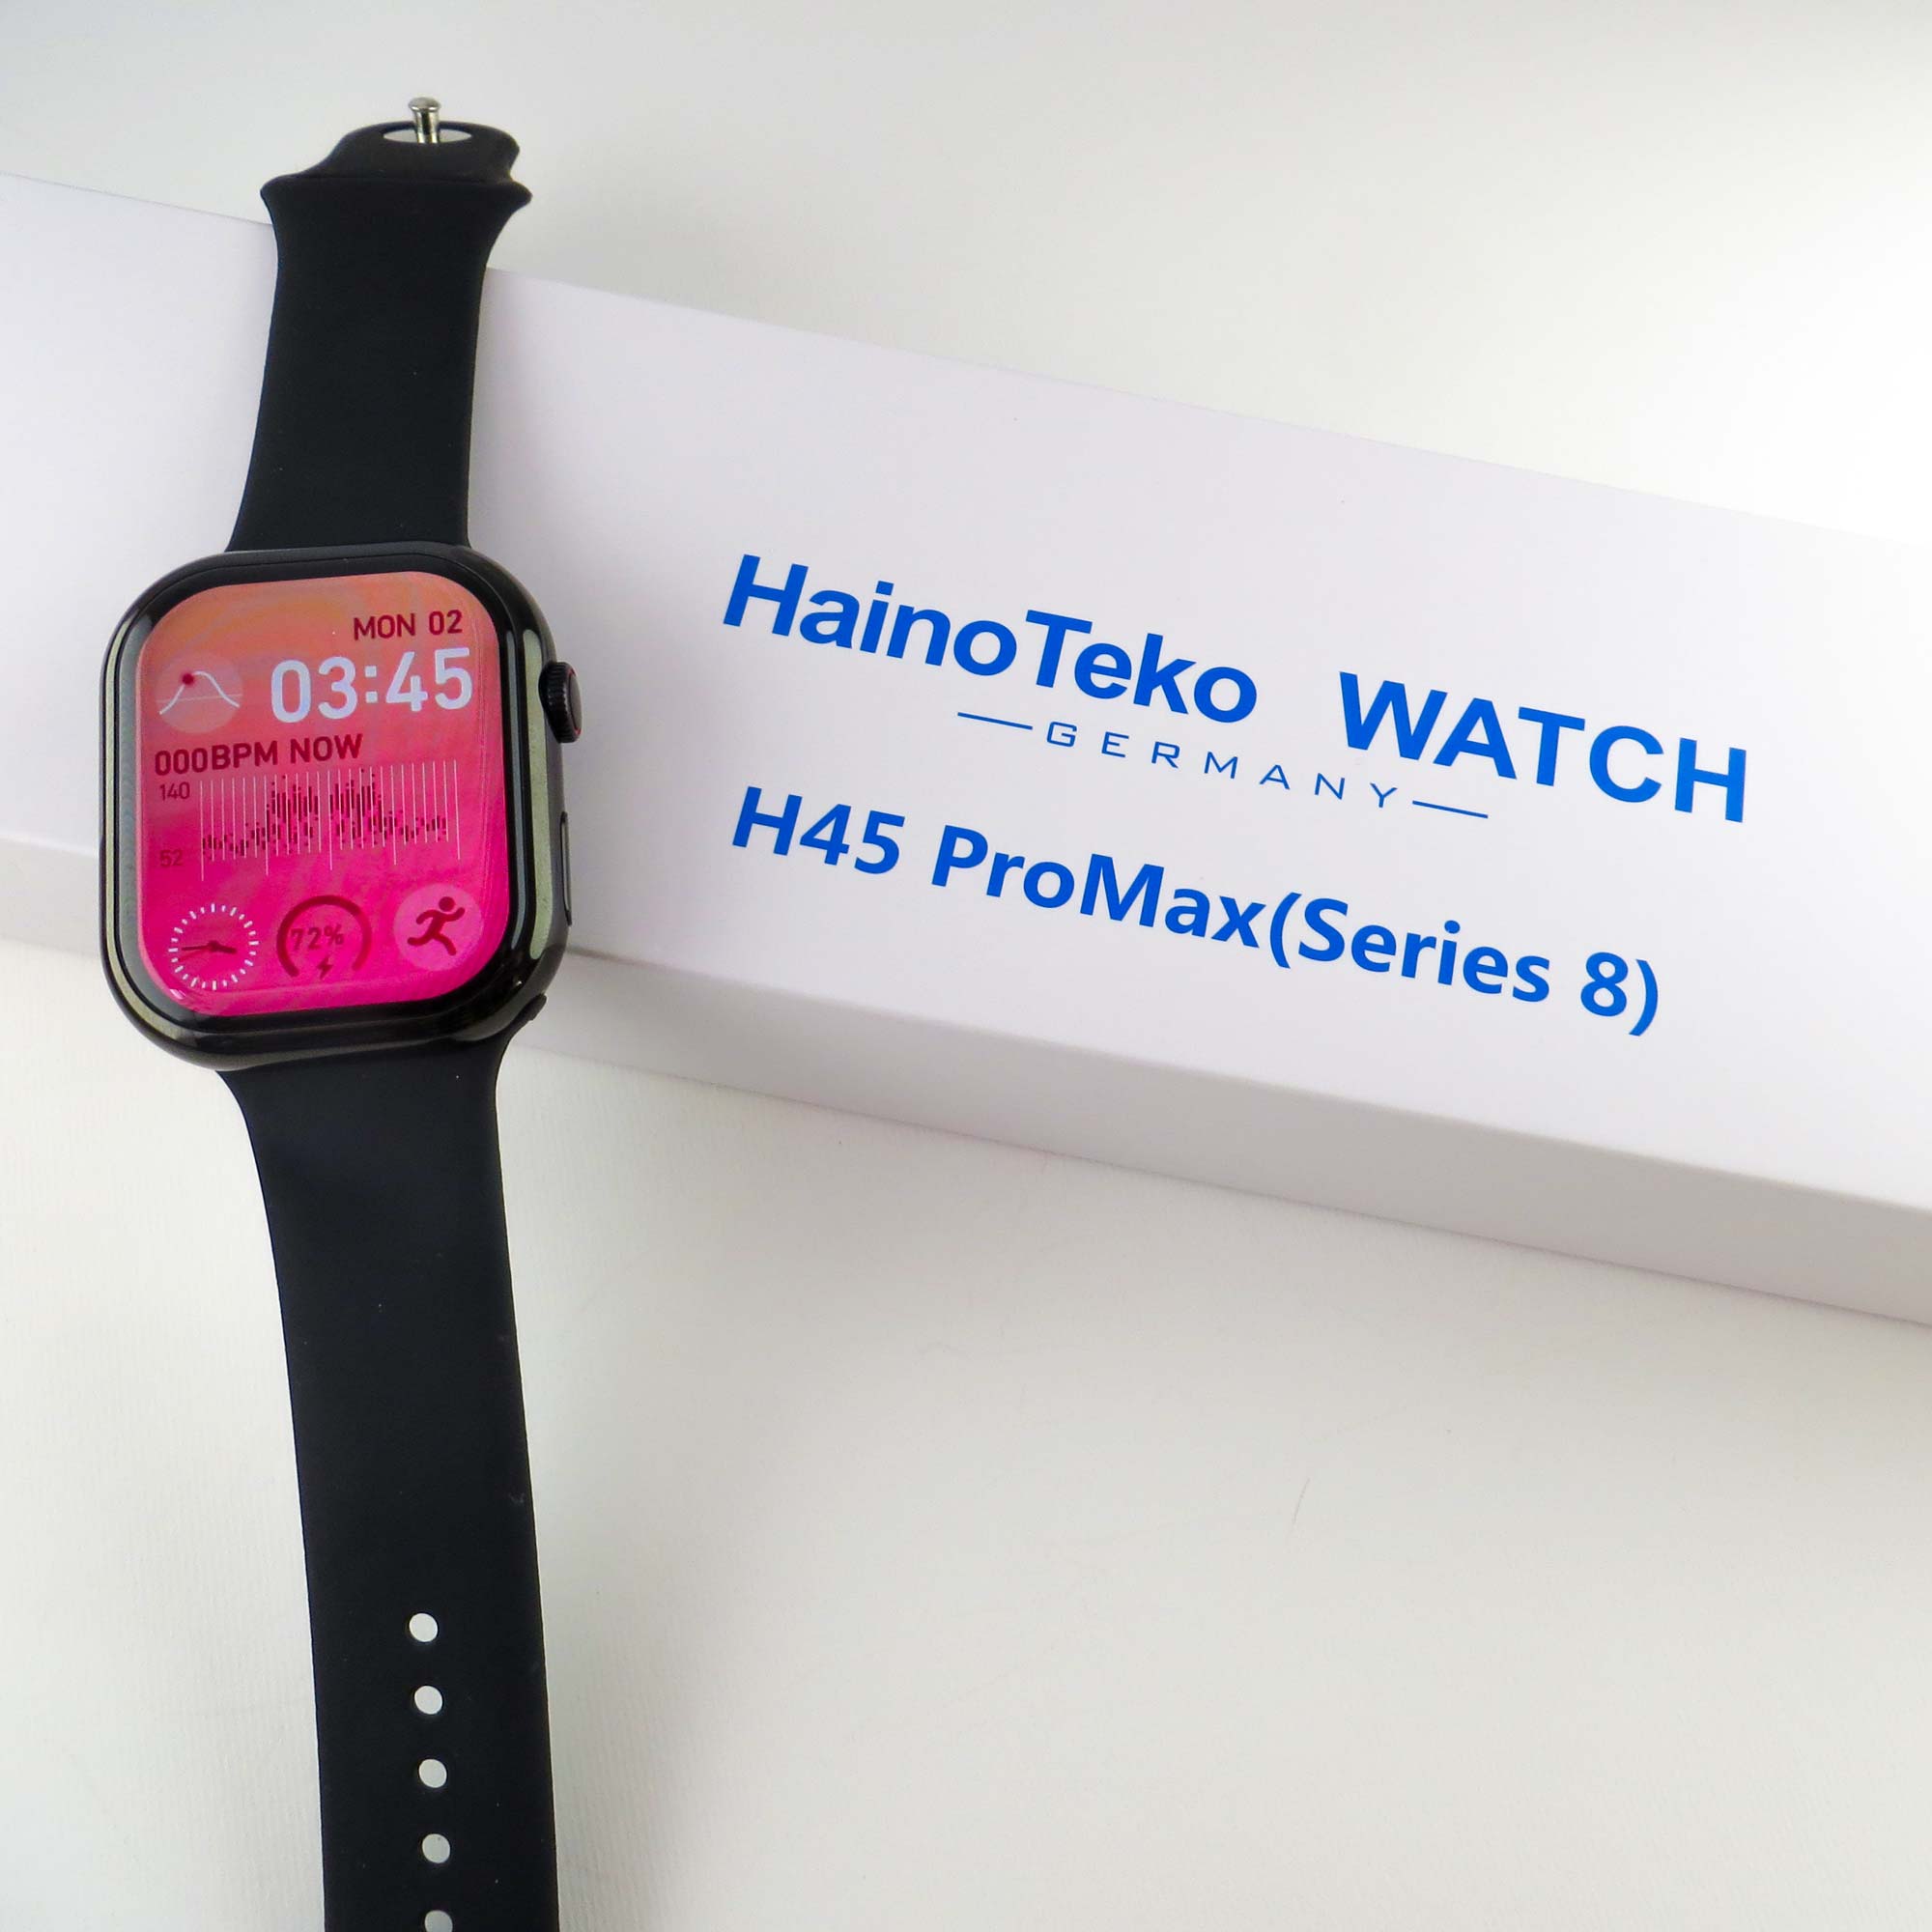 ساعت هوشمند هاینو تکو مدل H45 Pro Max سری 8